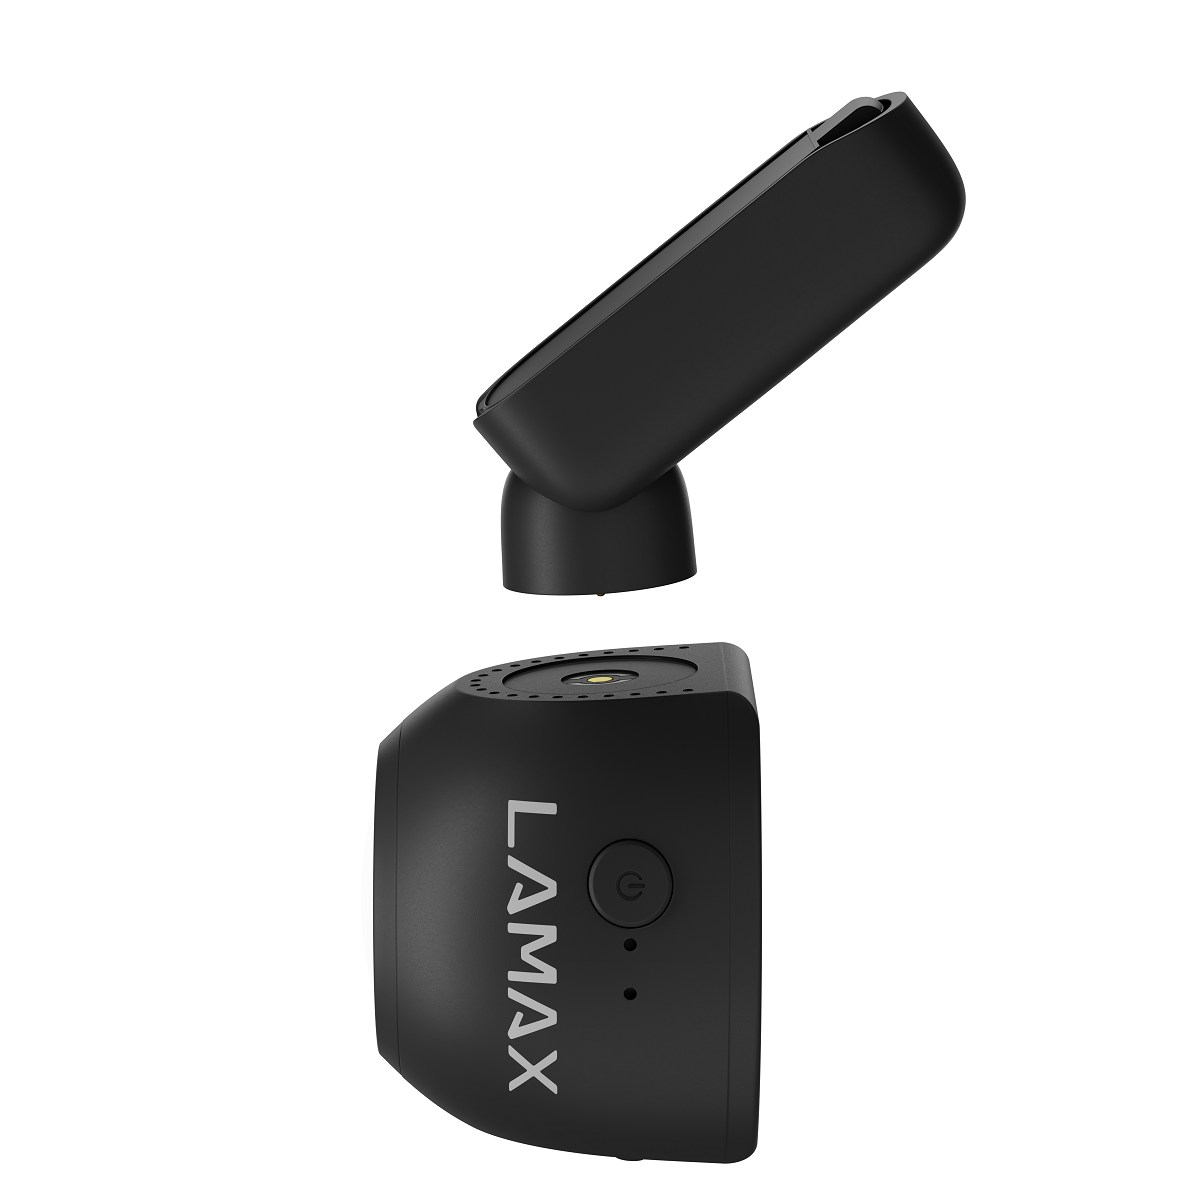 LAMAX Display Dashcam T6 WiFi GPS